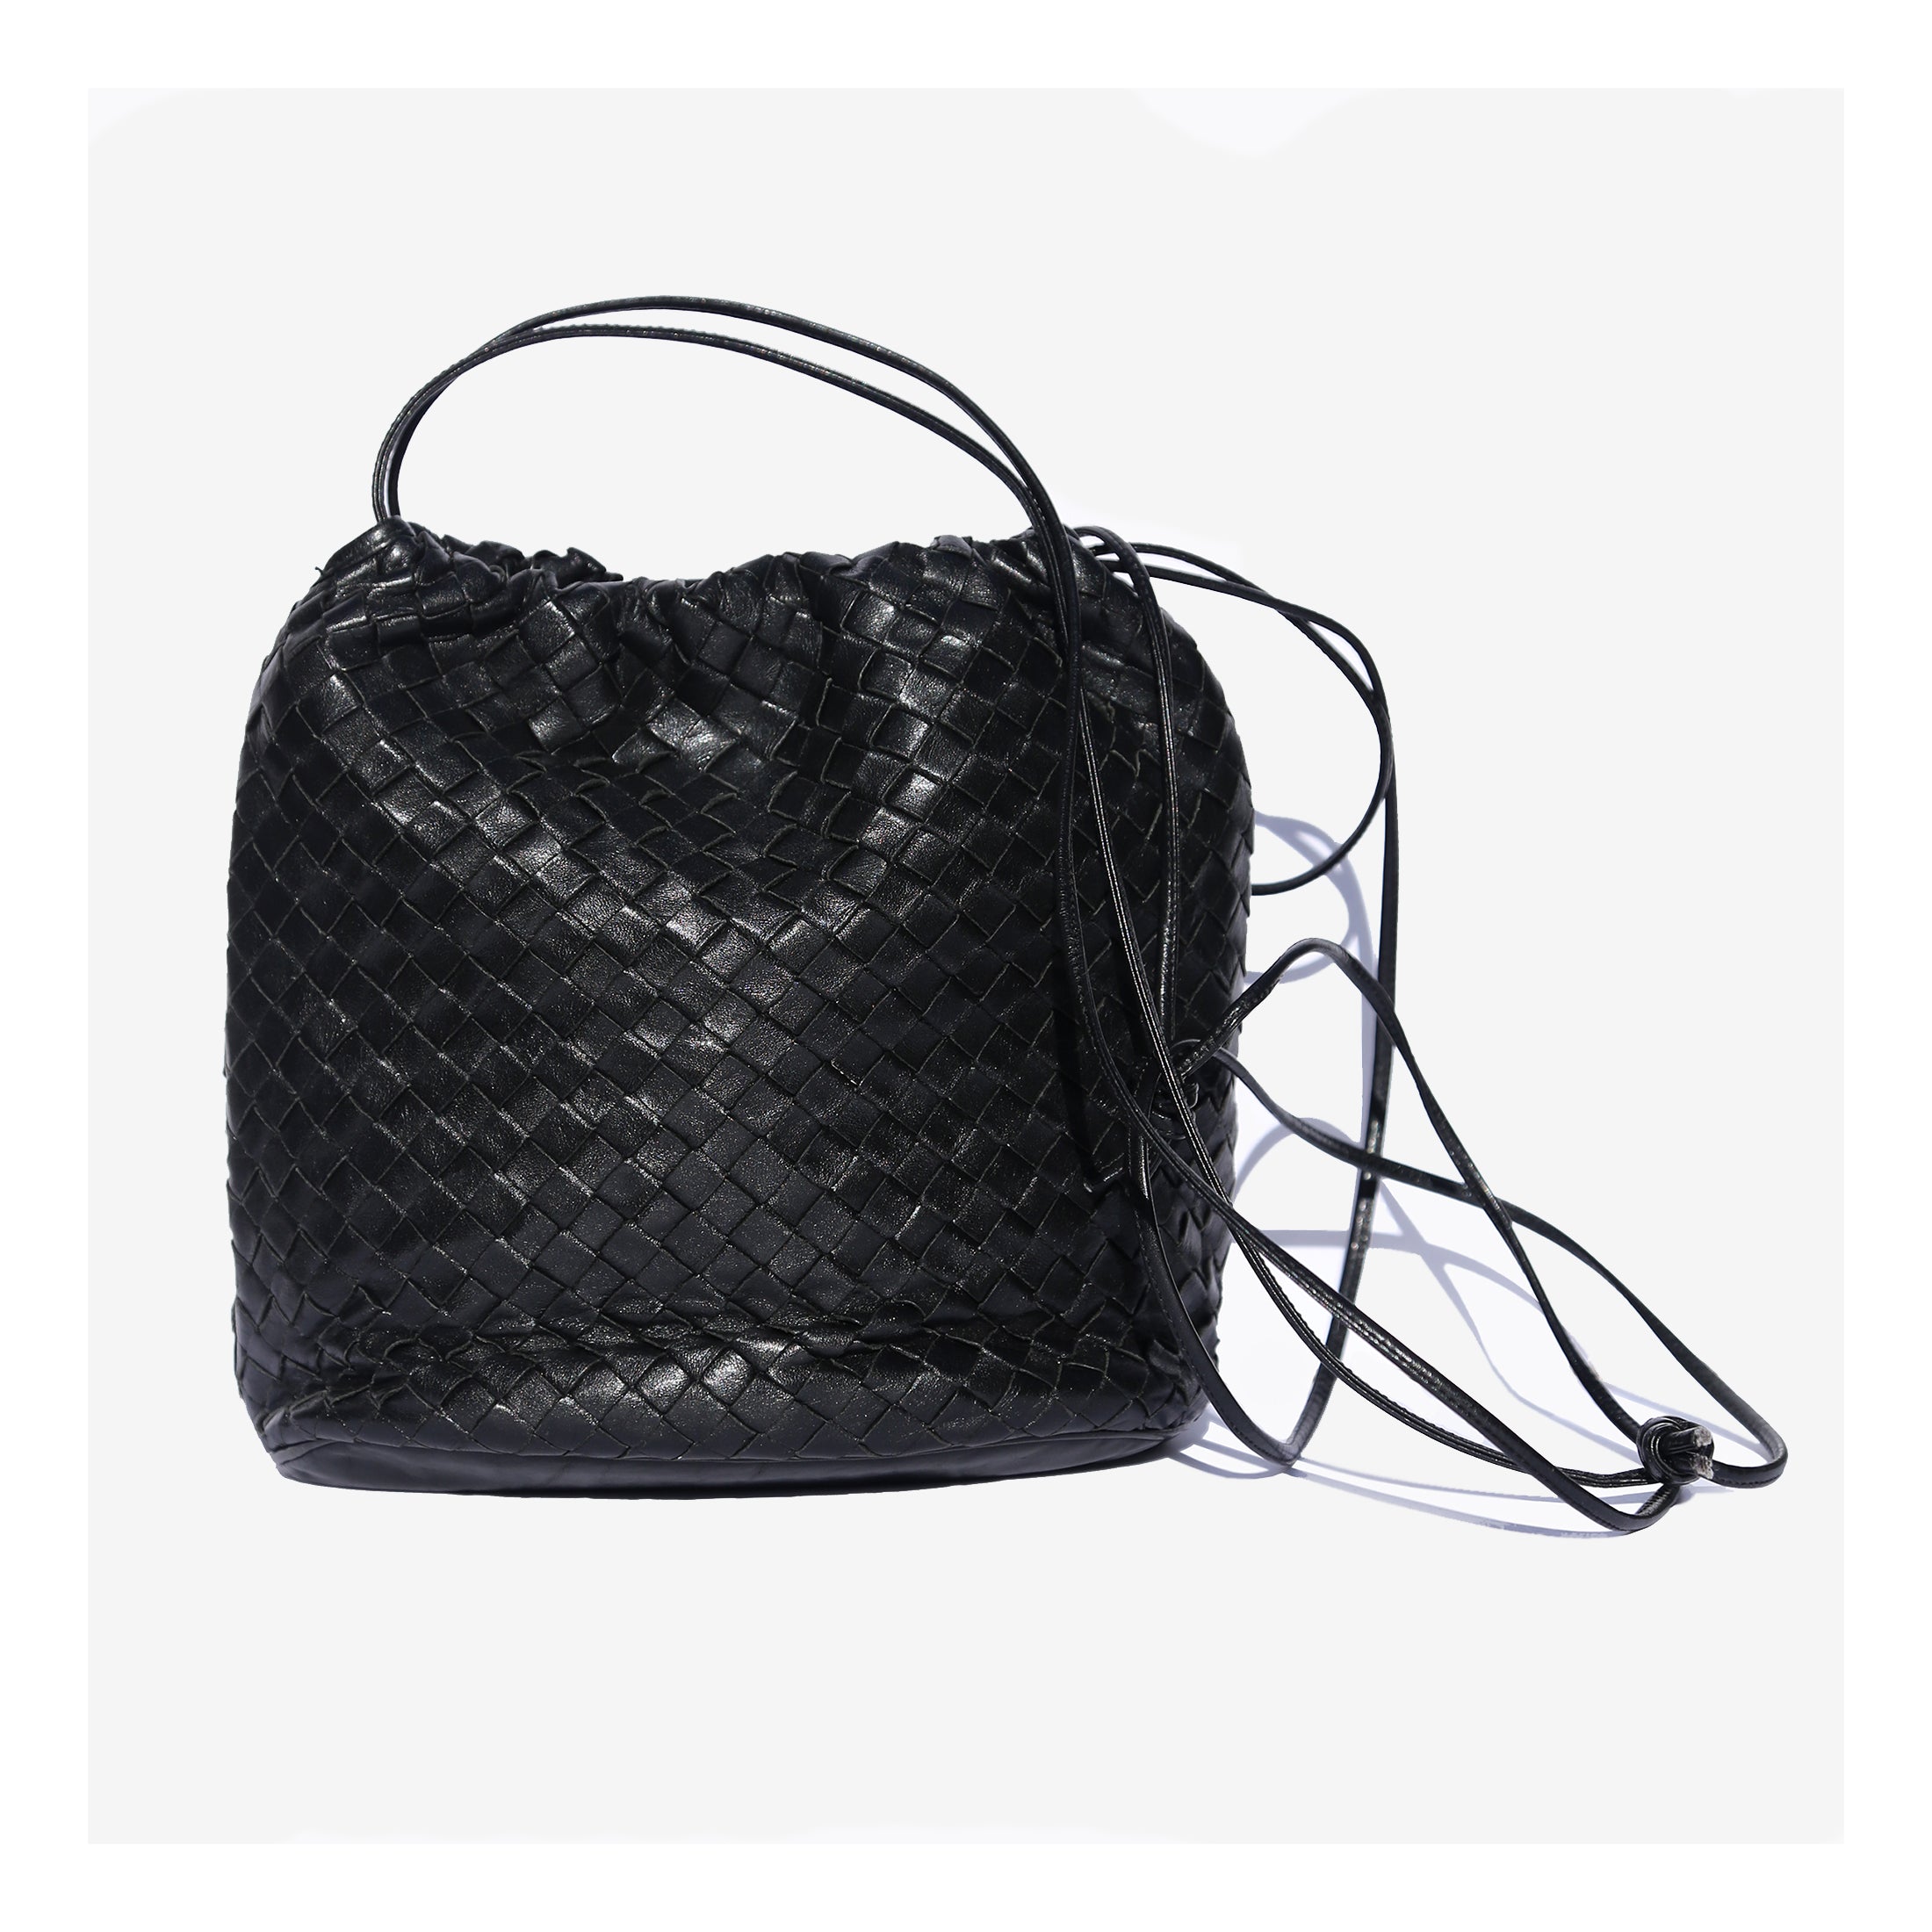 Vintage black leather woven intrecciato bucket bag